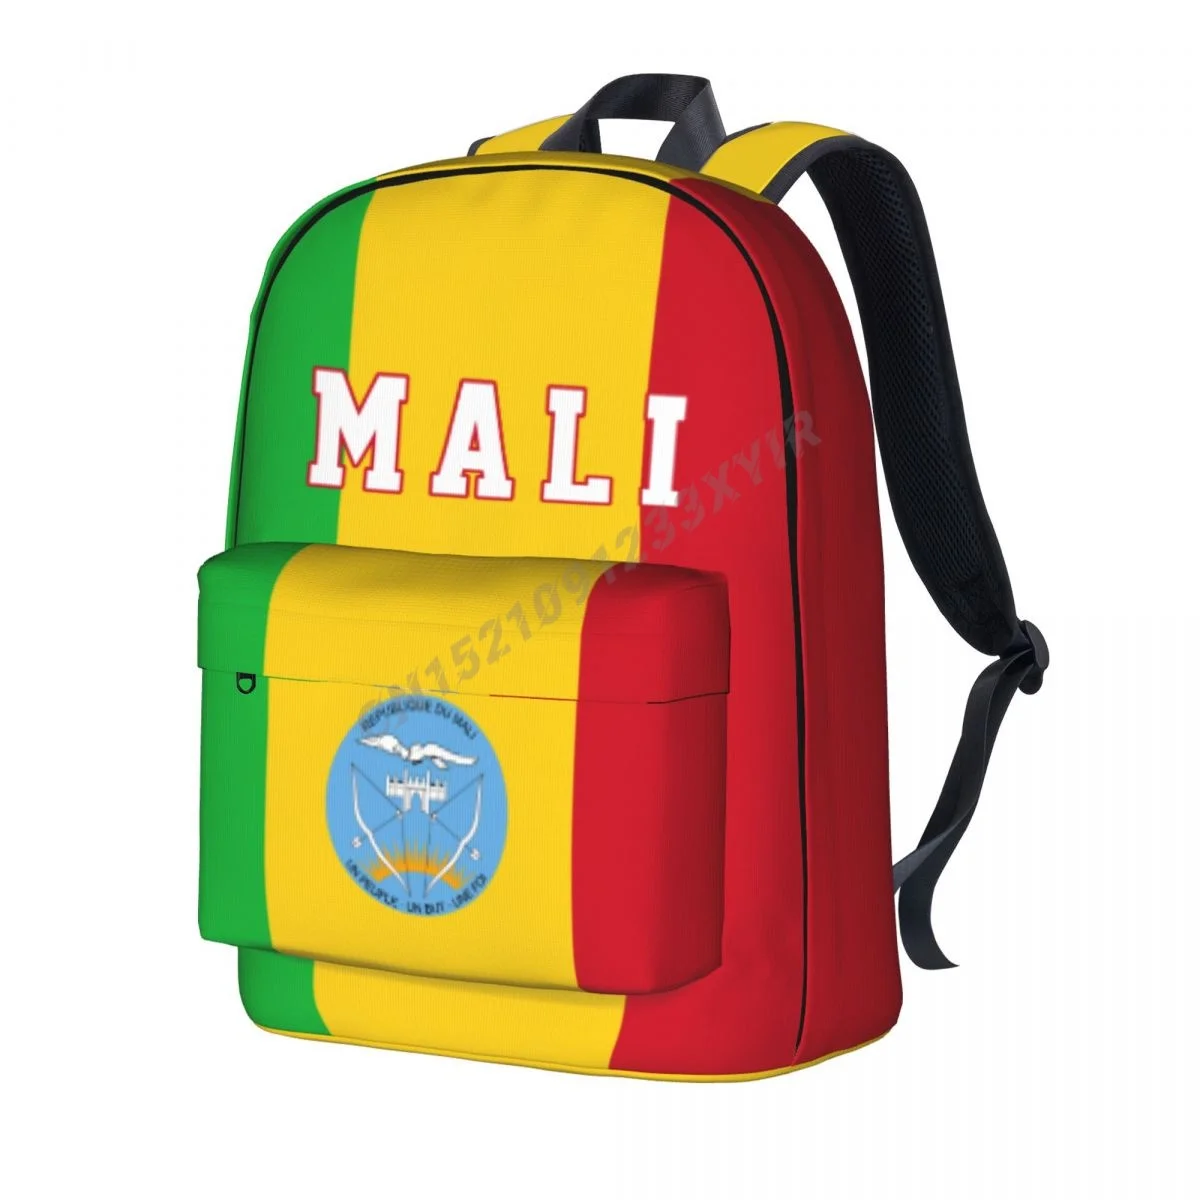 

Рюкзак унисекс с флагом Мали, школьный рюкзак с малийским стежком, сумка-мессенджер, чехол для ноутбука, дорожная сумка, подарок